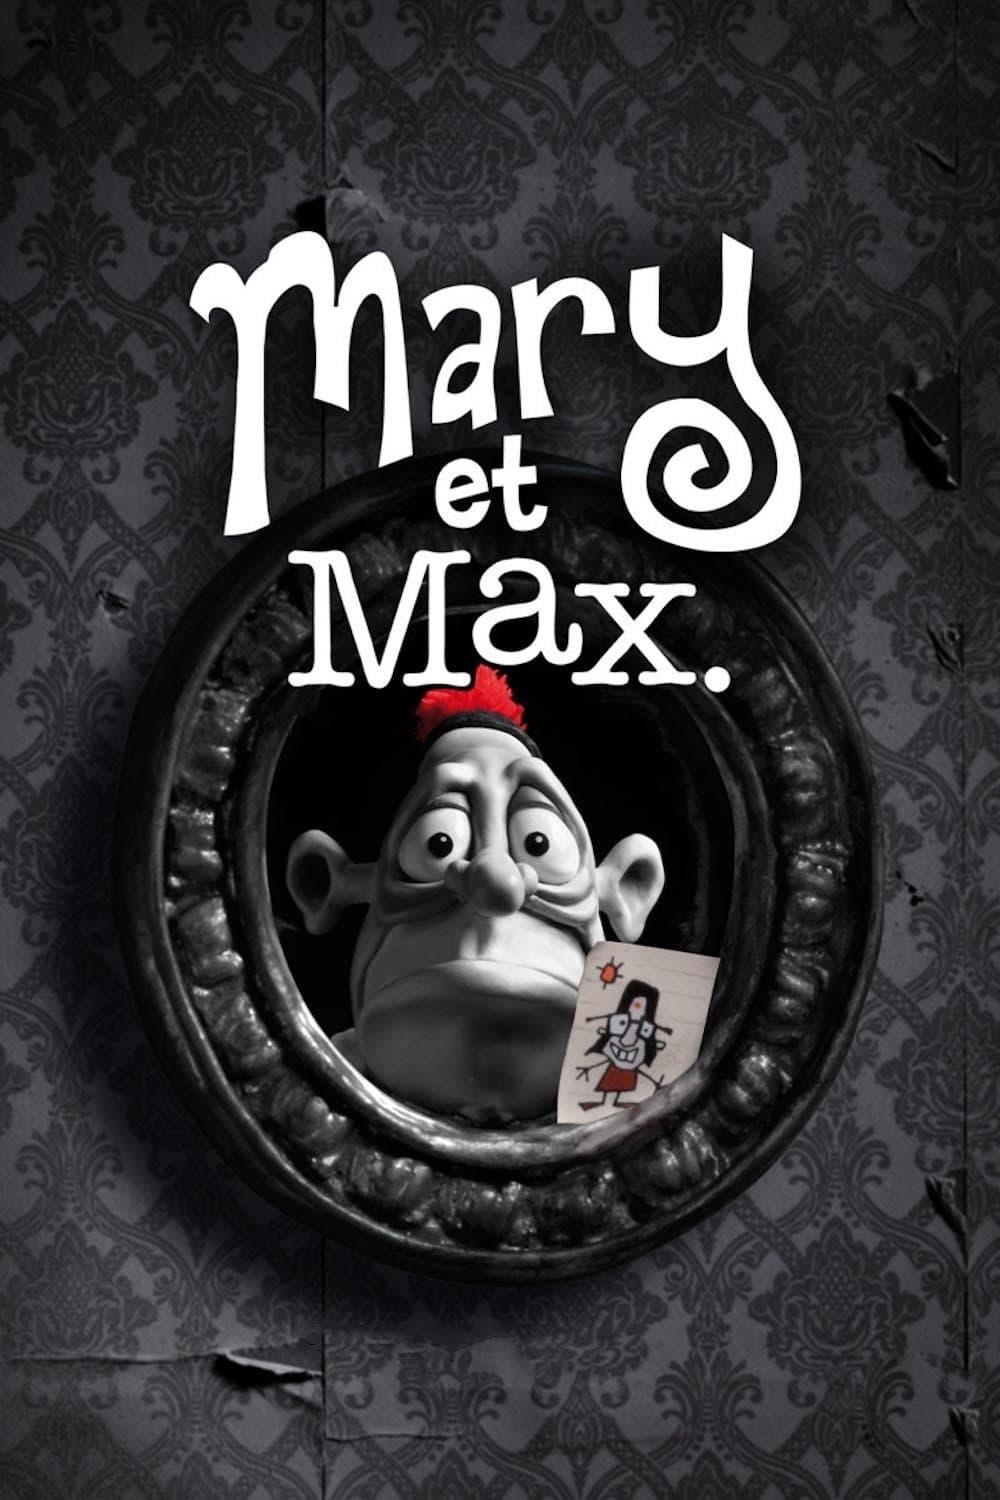 Mary et Max. est-il disponible sur Netflix ou autre ?